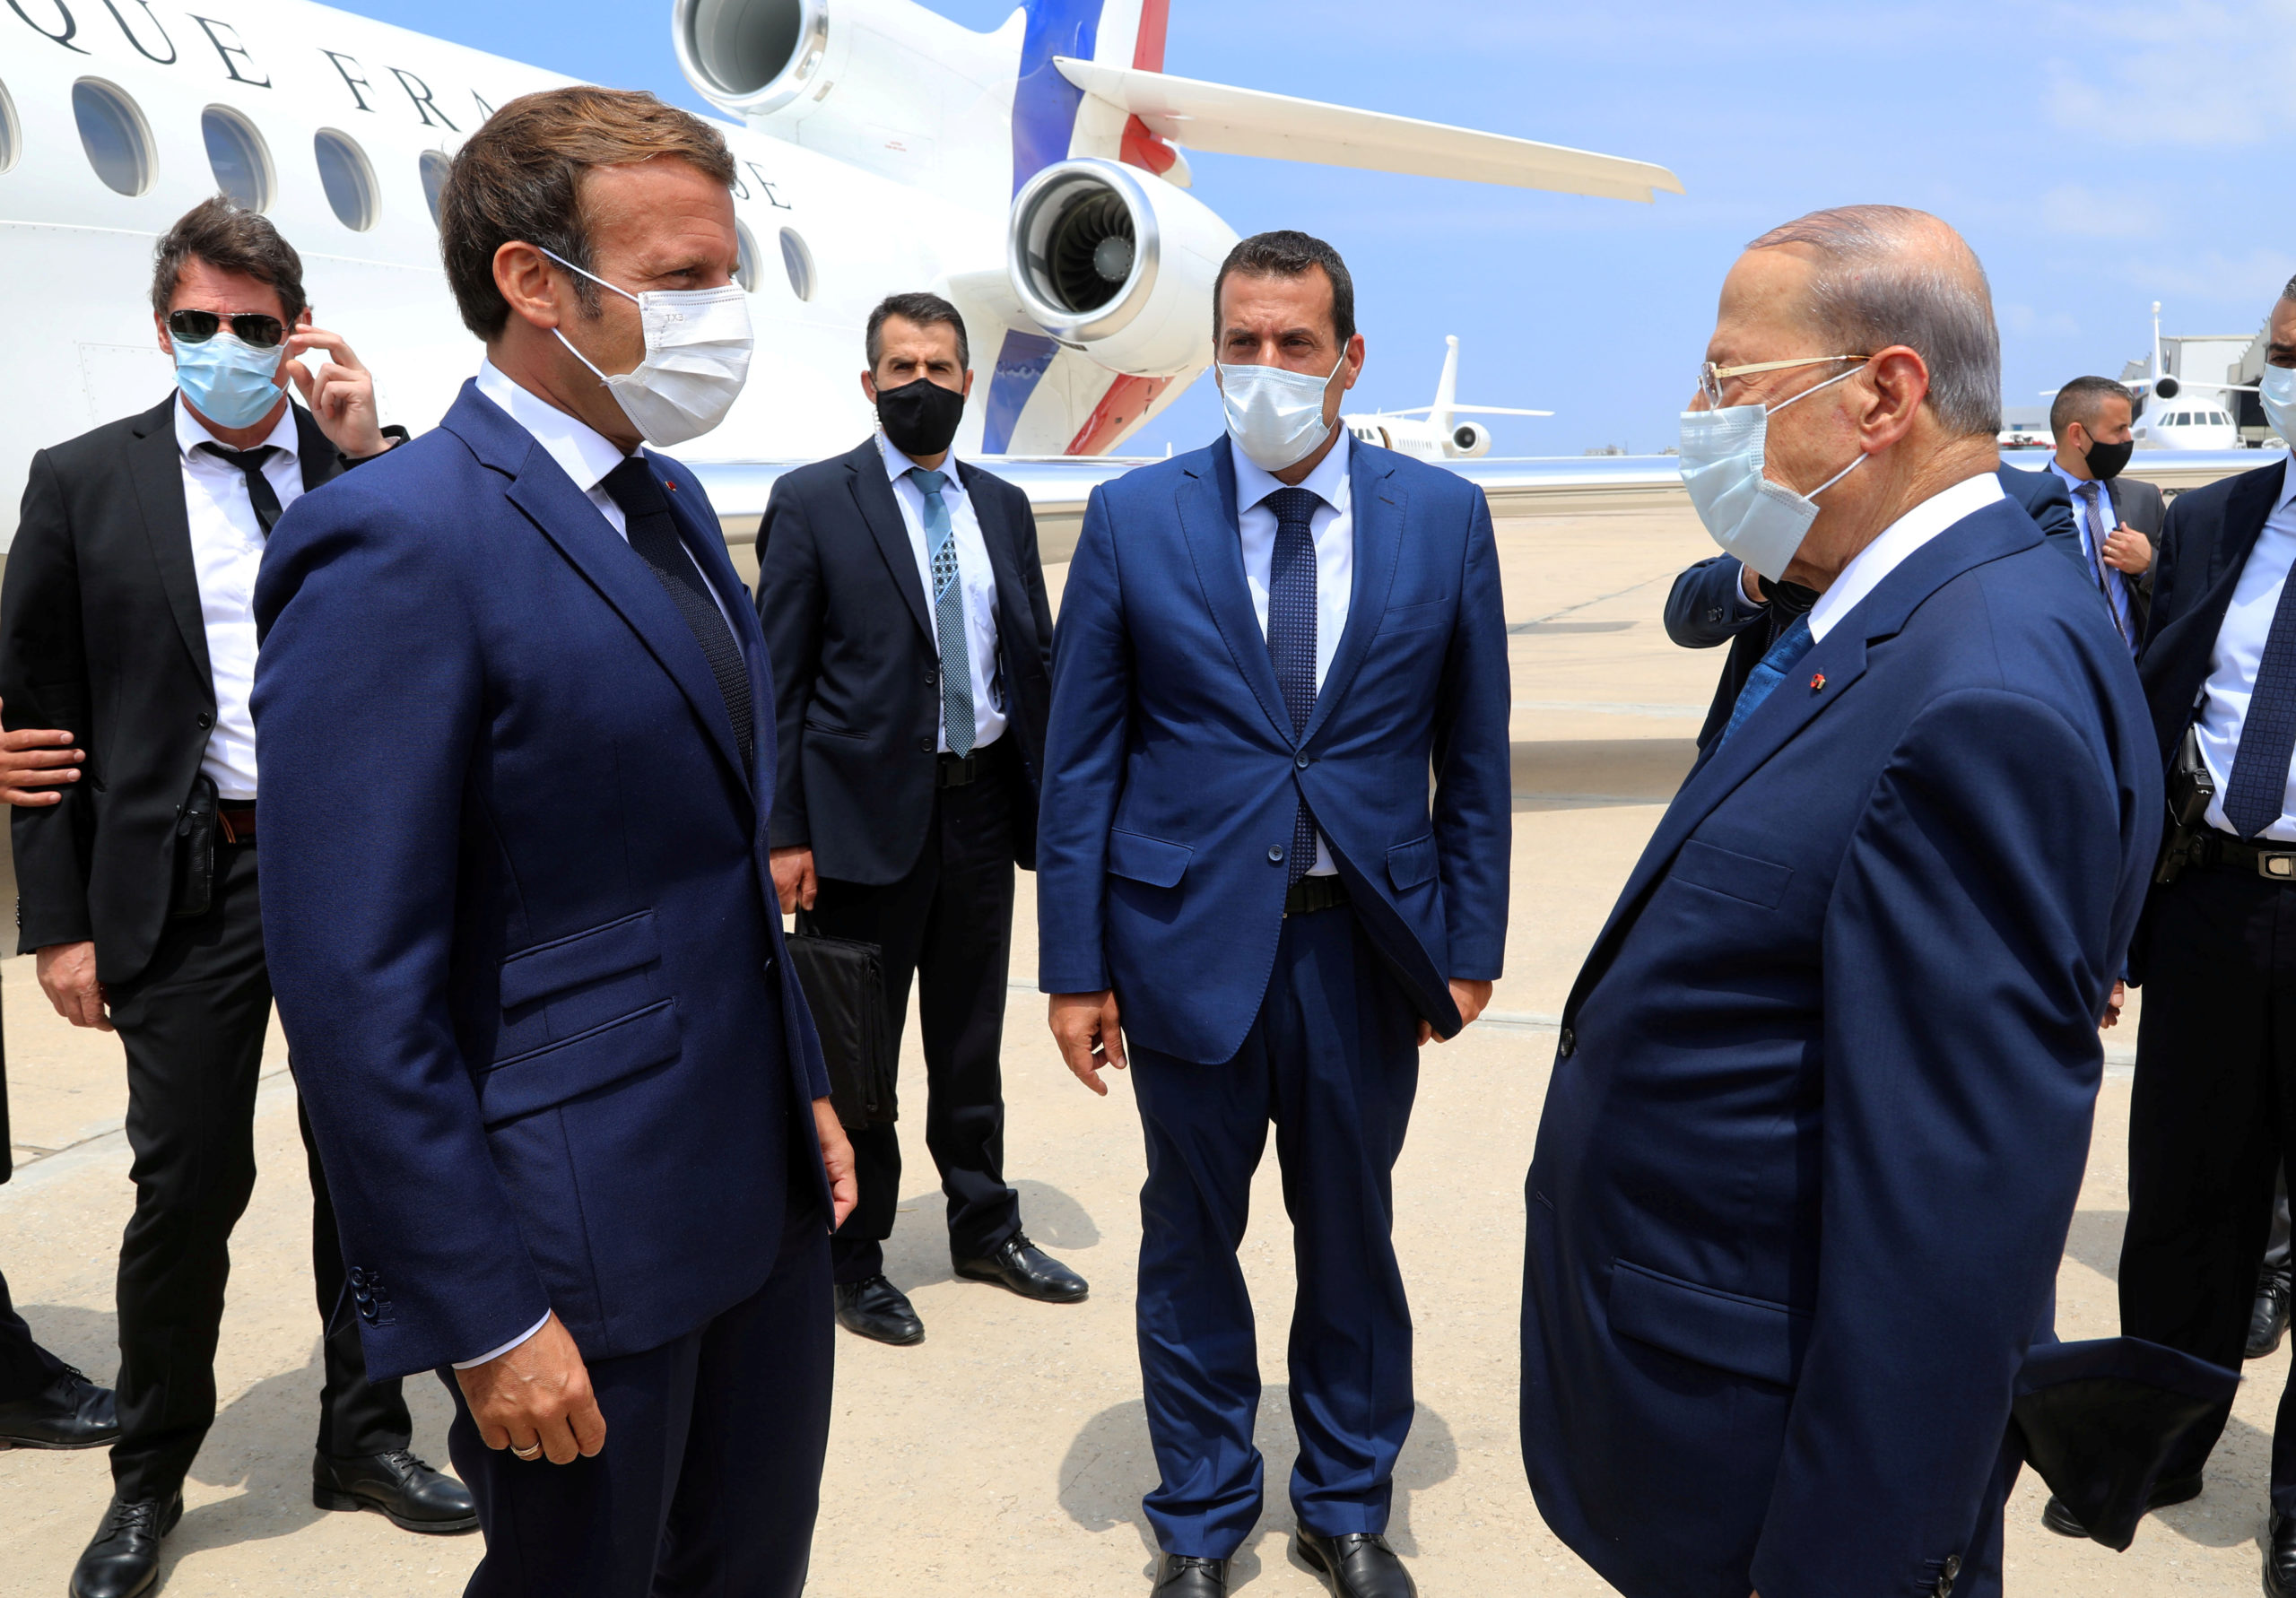 A Beyrouth, capitale sinistrée, Macron appelle à un "changement profond"